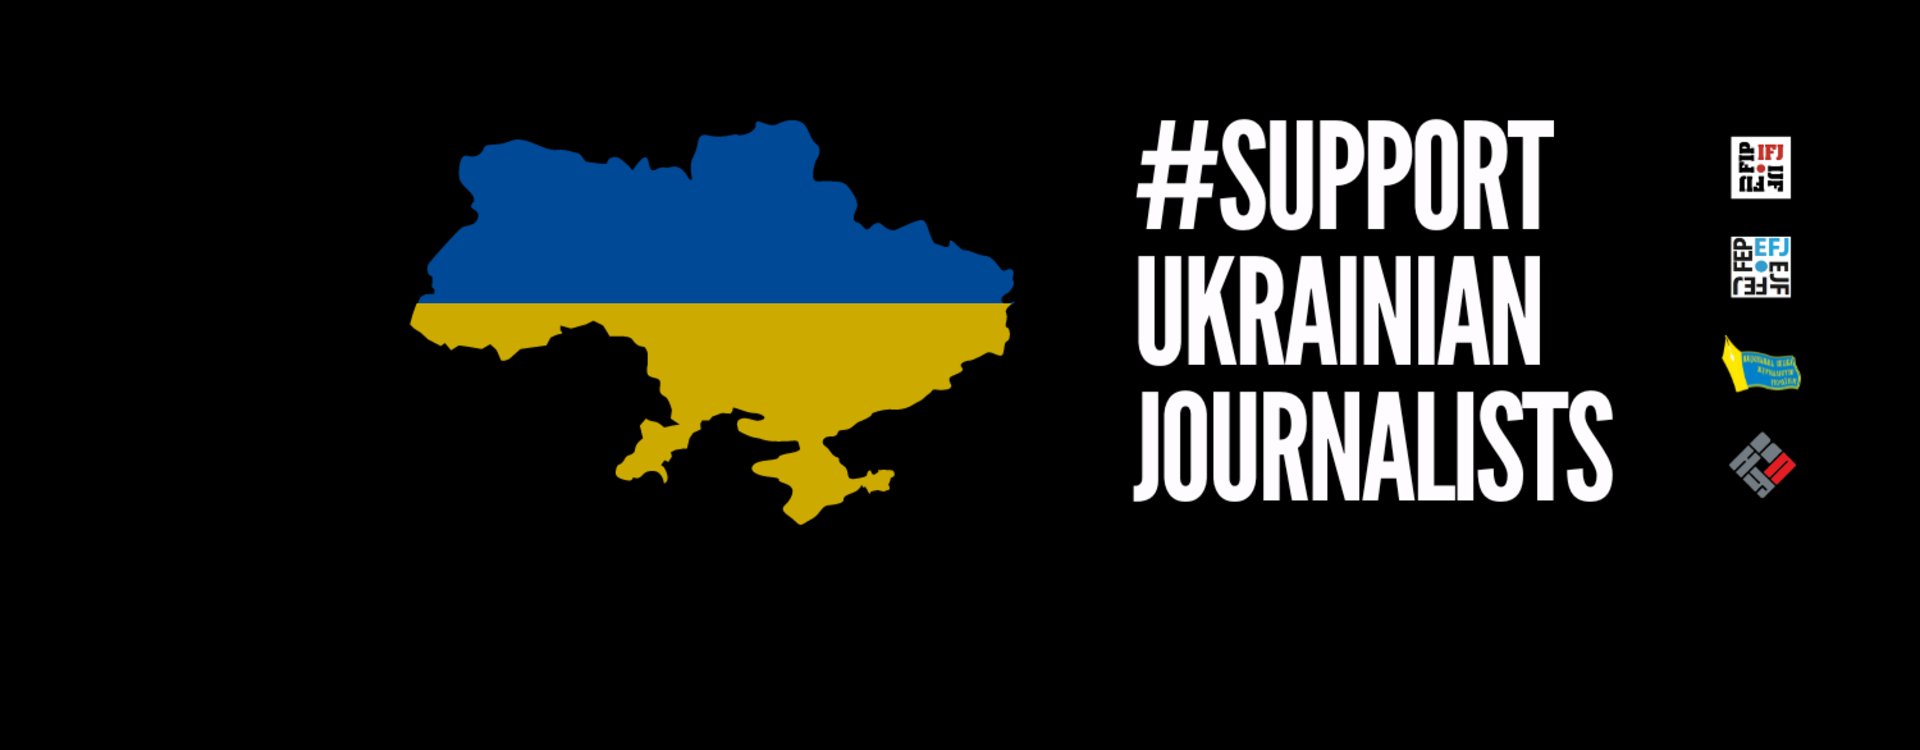 Periodistas en Ucrania necesitan nuestra solidaridad